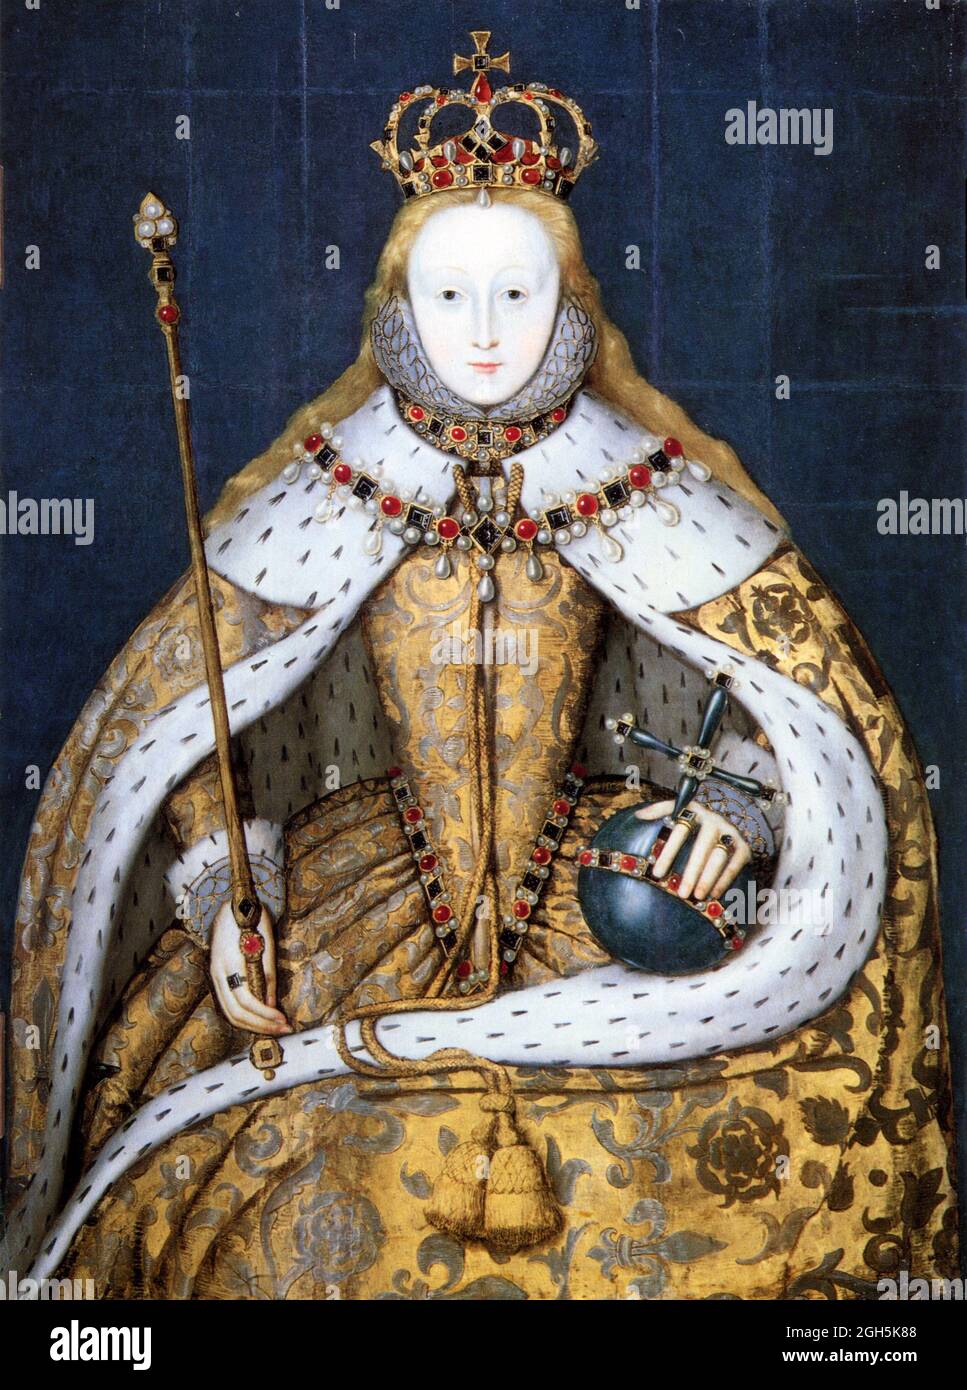 Ein Porträt von Königin Elizabeth I., die von 1558 bis 1603 Königin von England war. Sie ist in ihren Krönungsroben gekleidet und hält den Reichsapfel und das Zepter Stockfoto